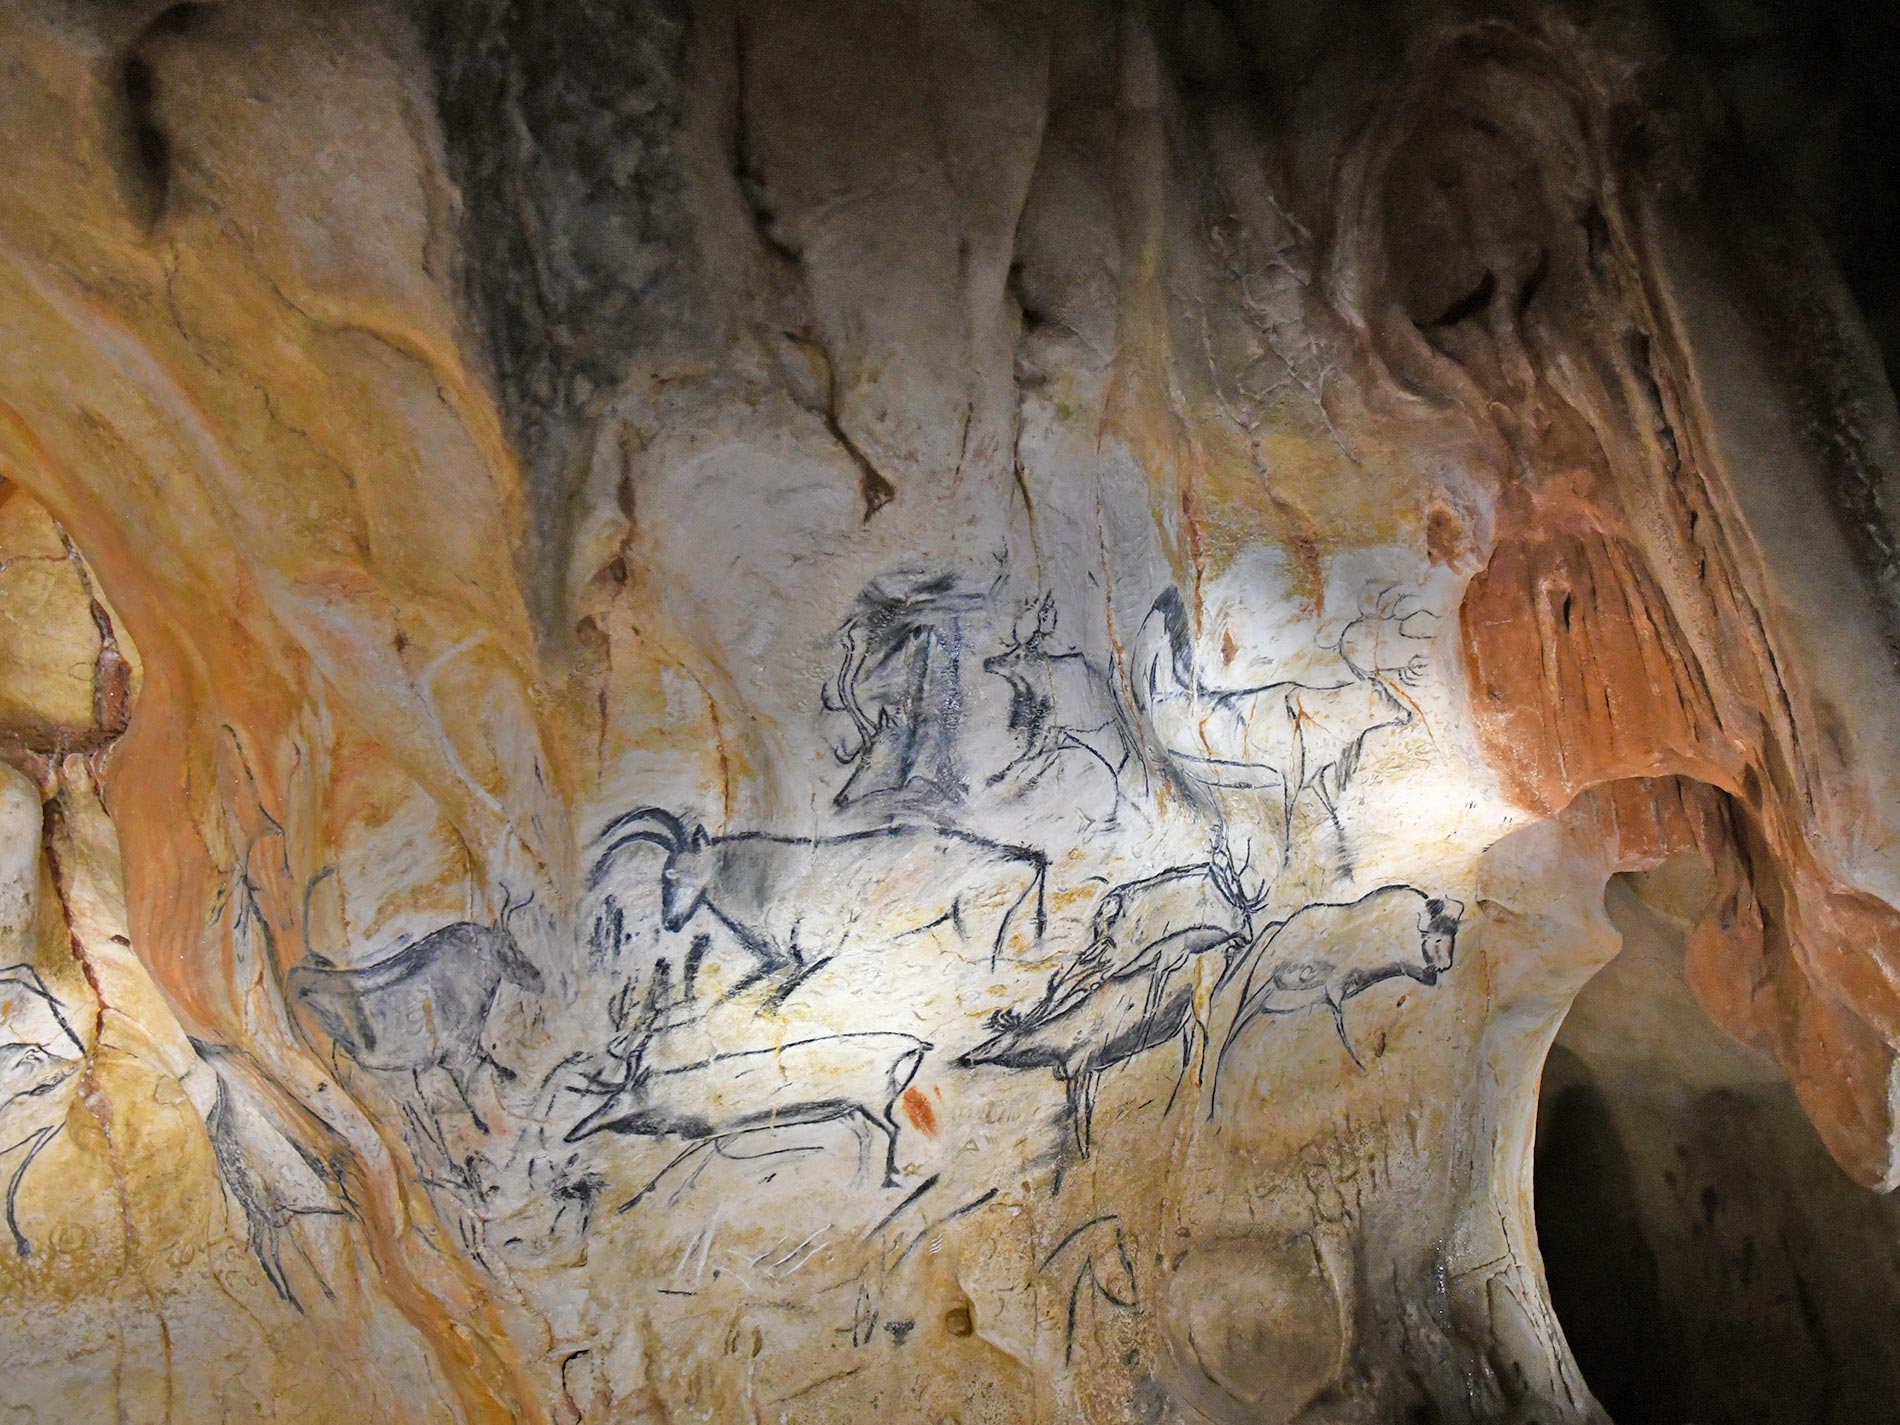 Grotte Chauvet